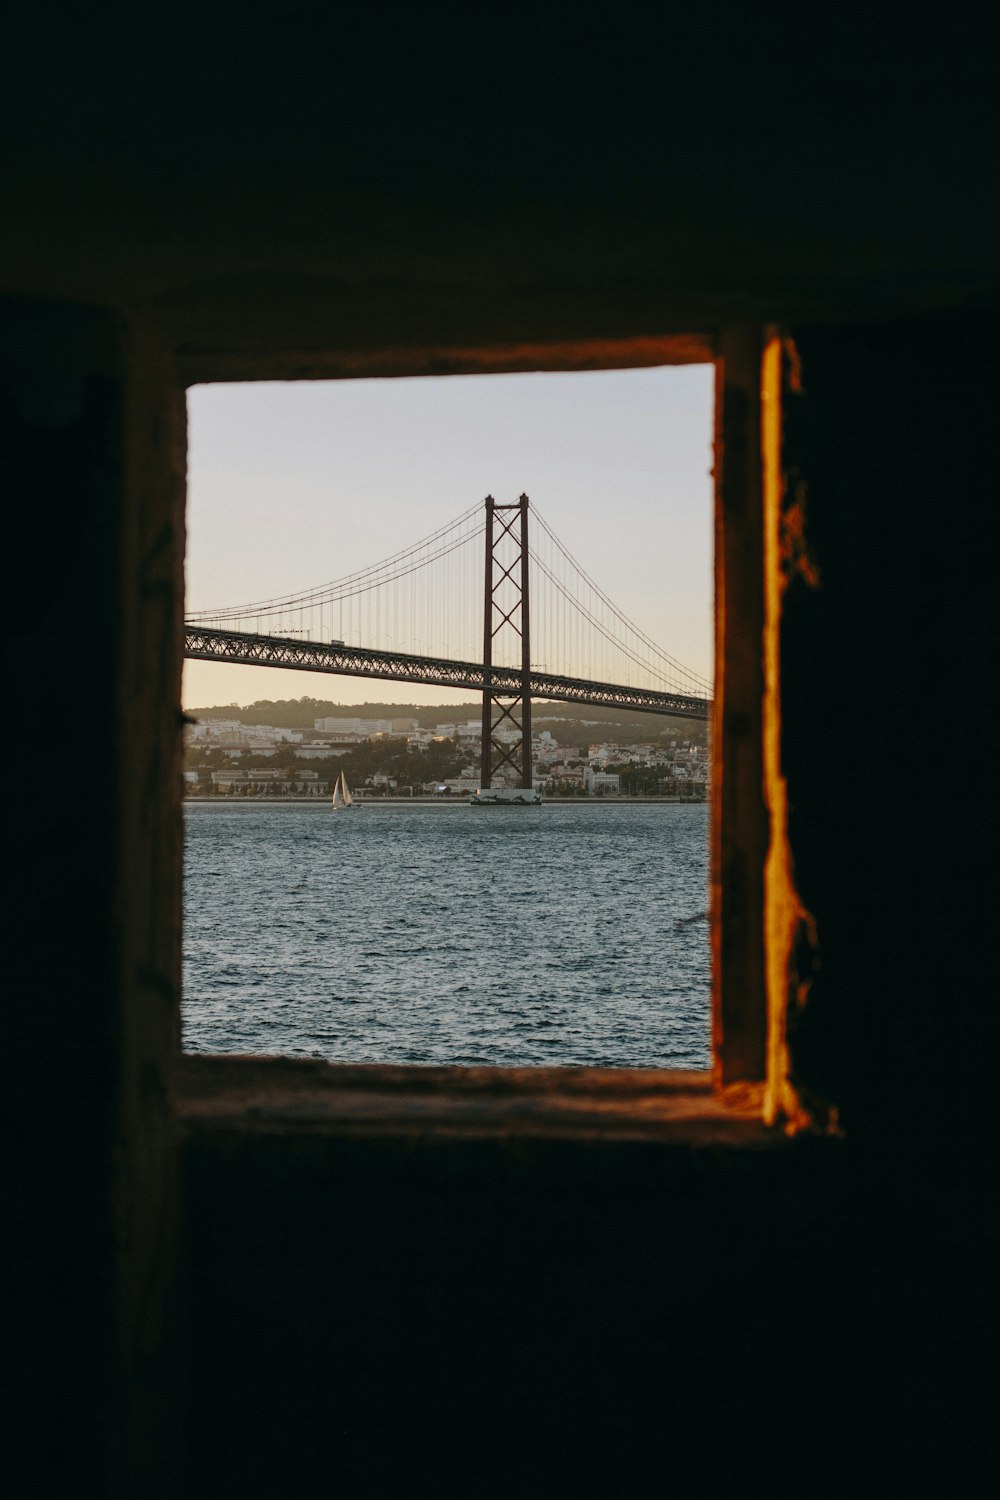 ventana con vista al puente de San Francisco